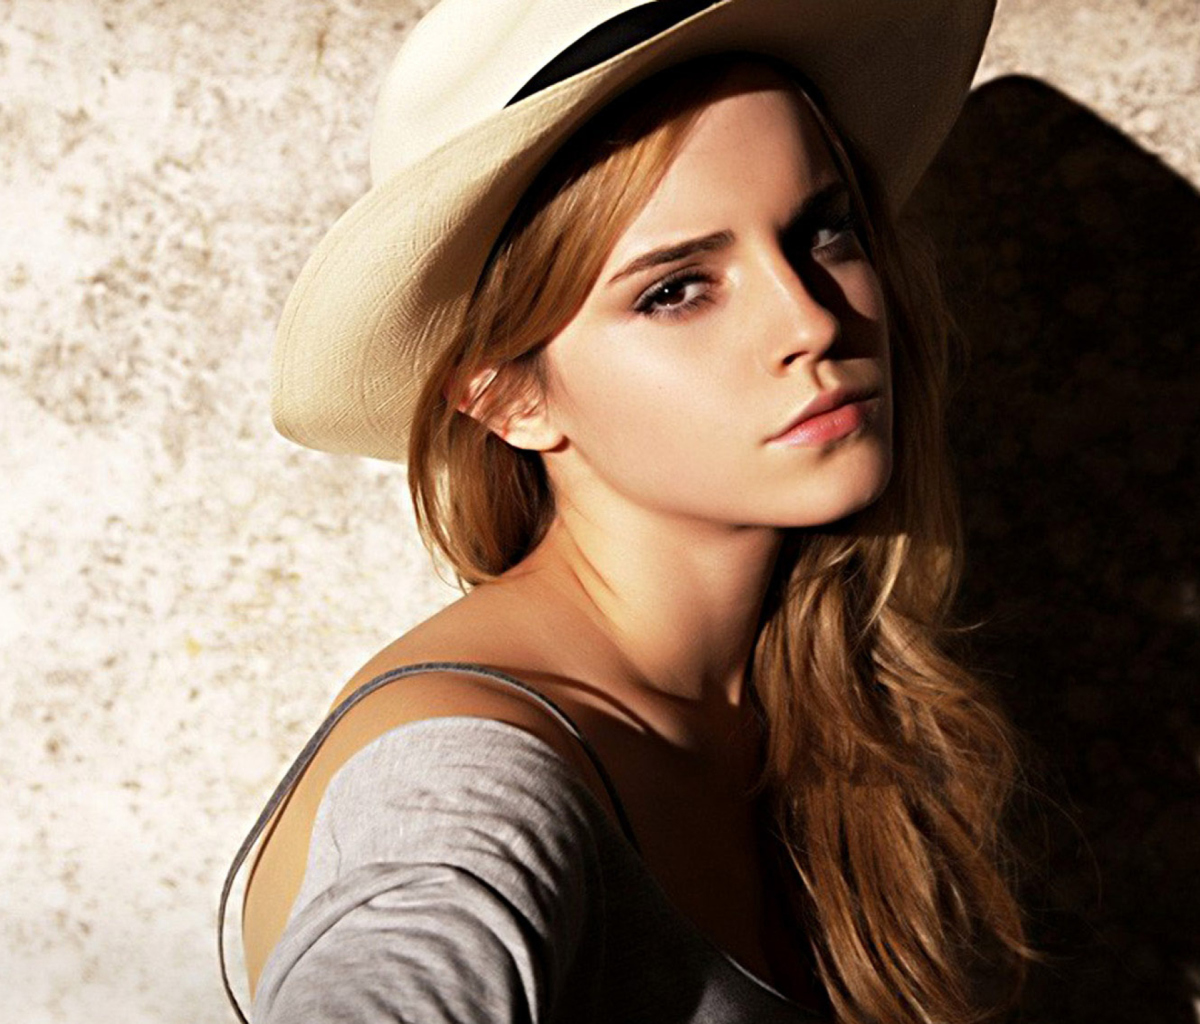 Cute Emma Watson wallpaper 1200x1024